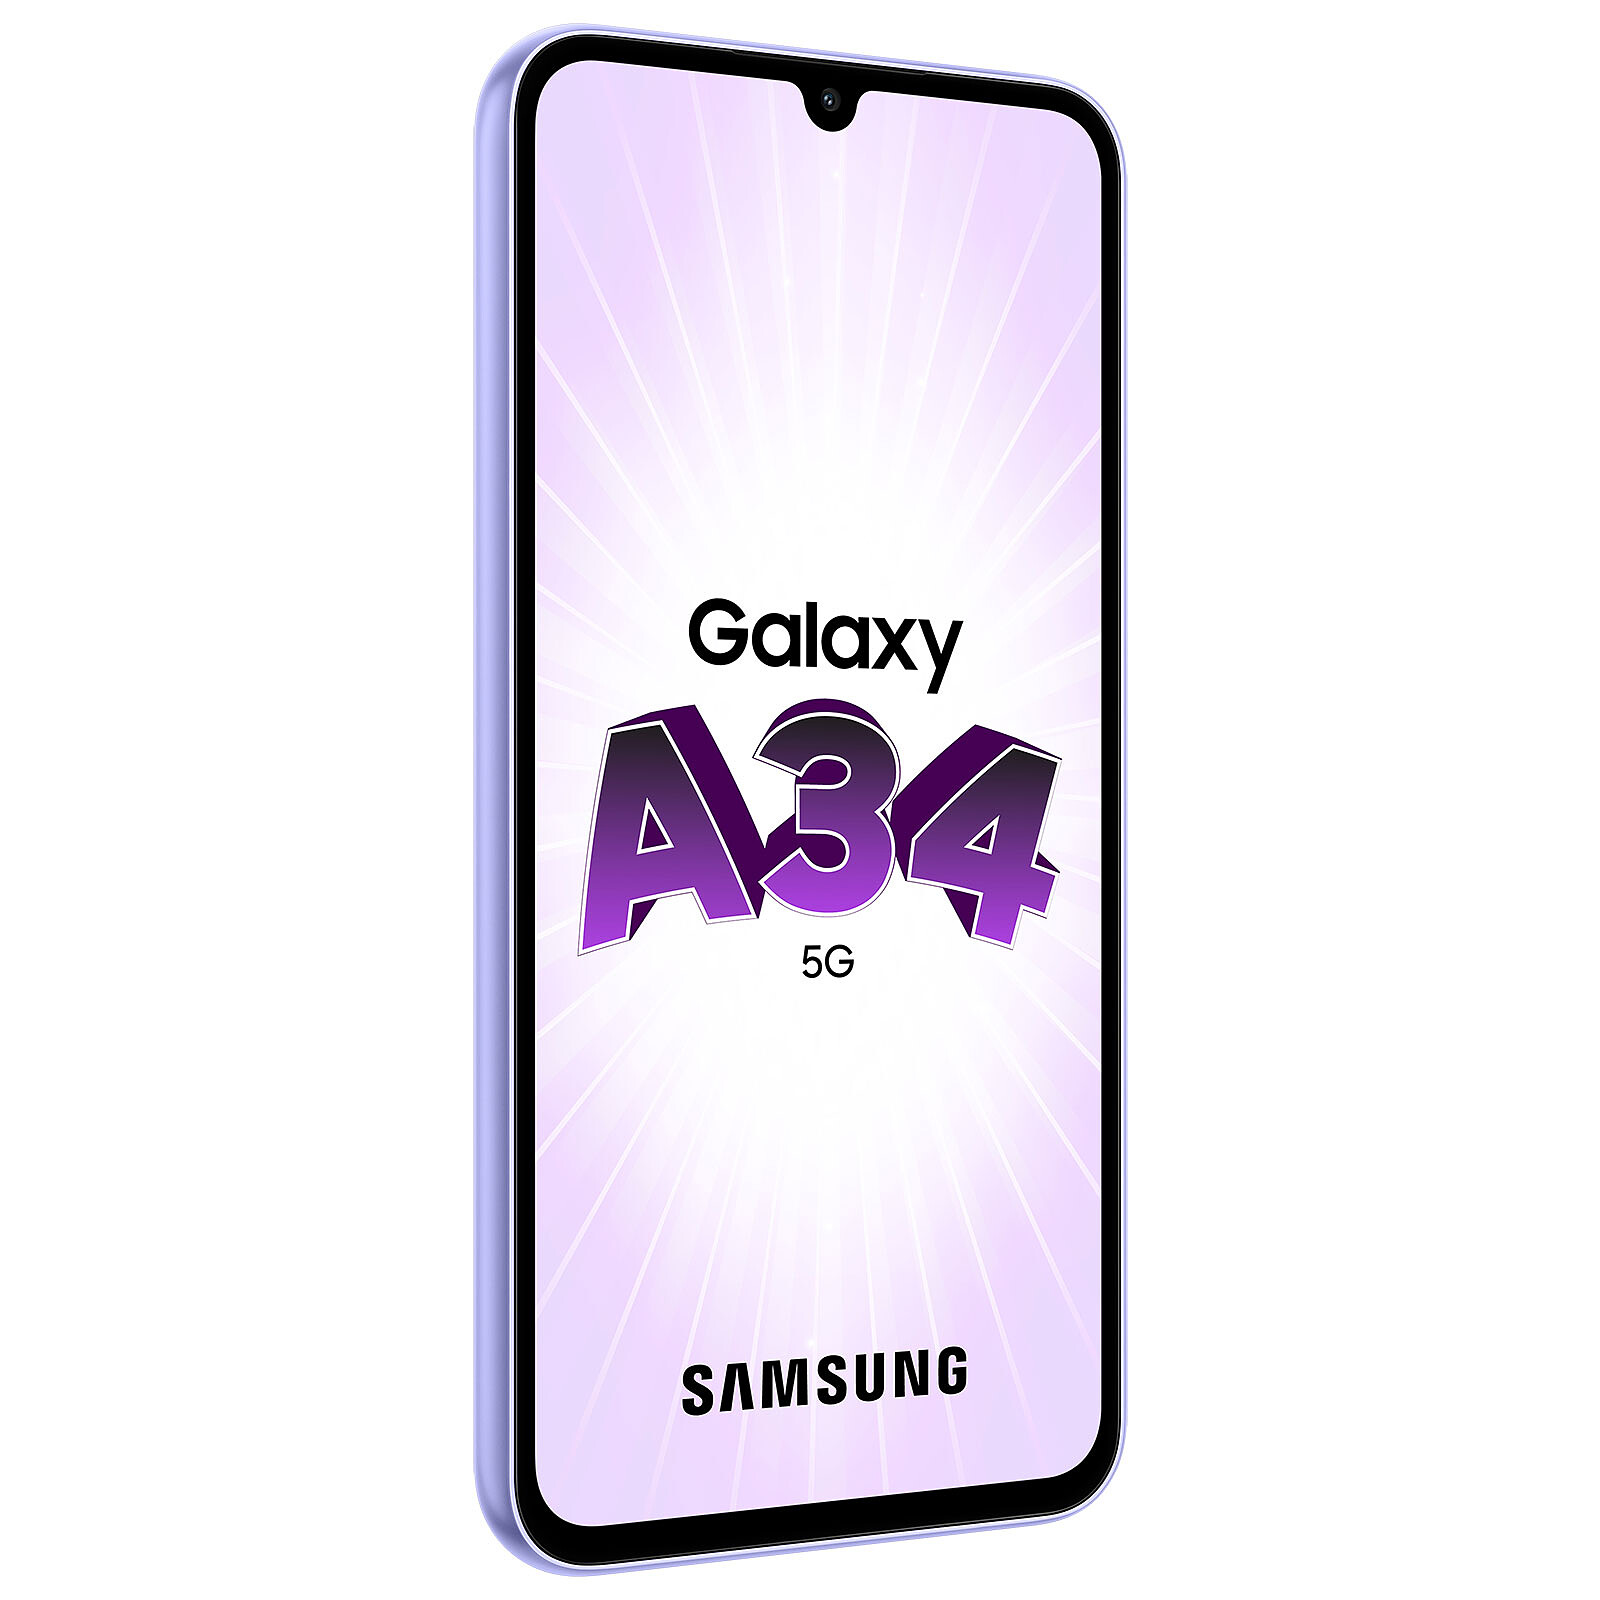 Samsung Galaxy A34 5G 128 GB awesome graphite 6 GB RAM